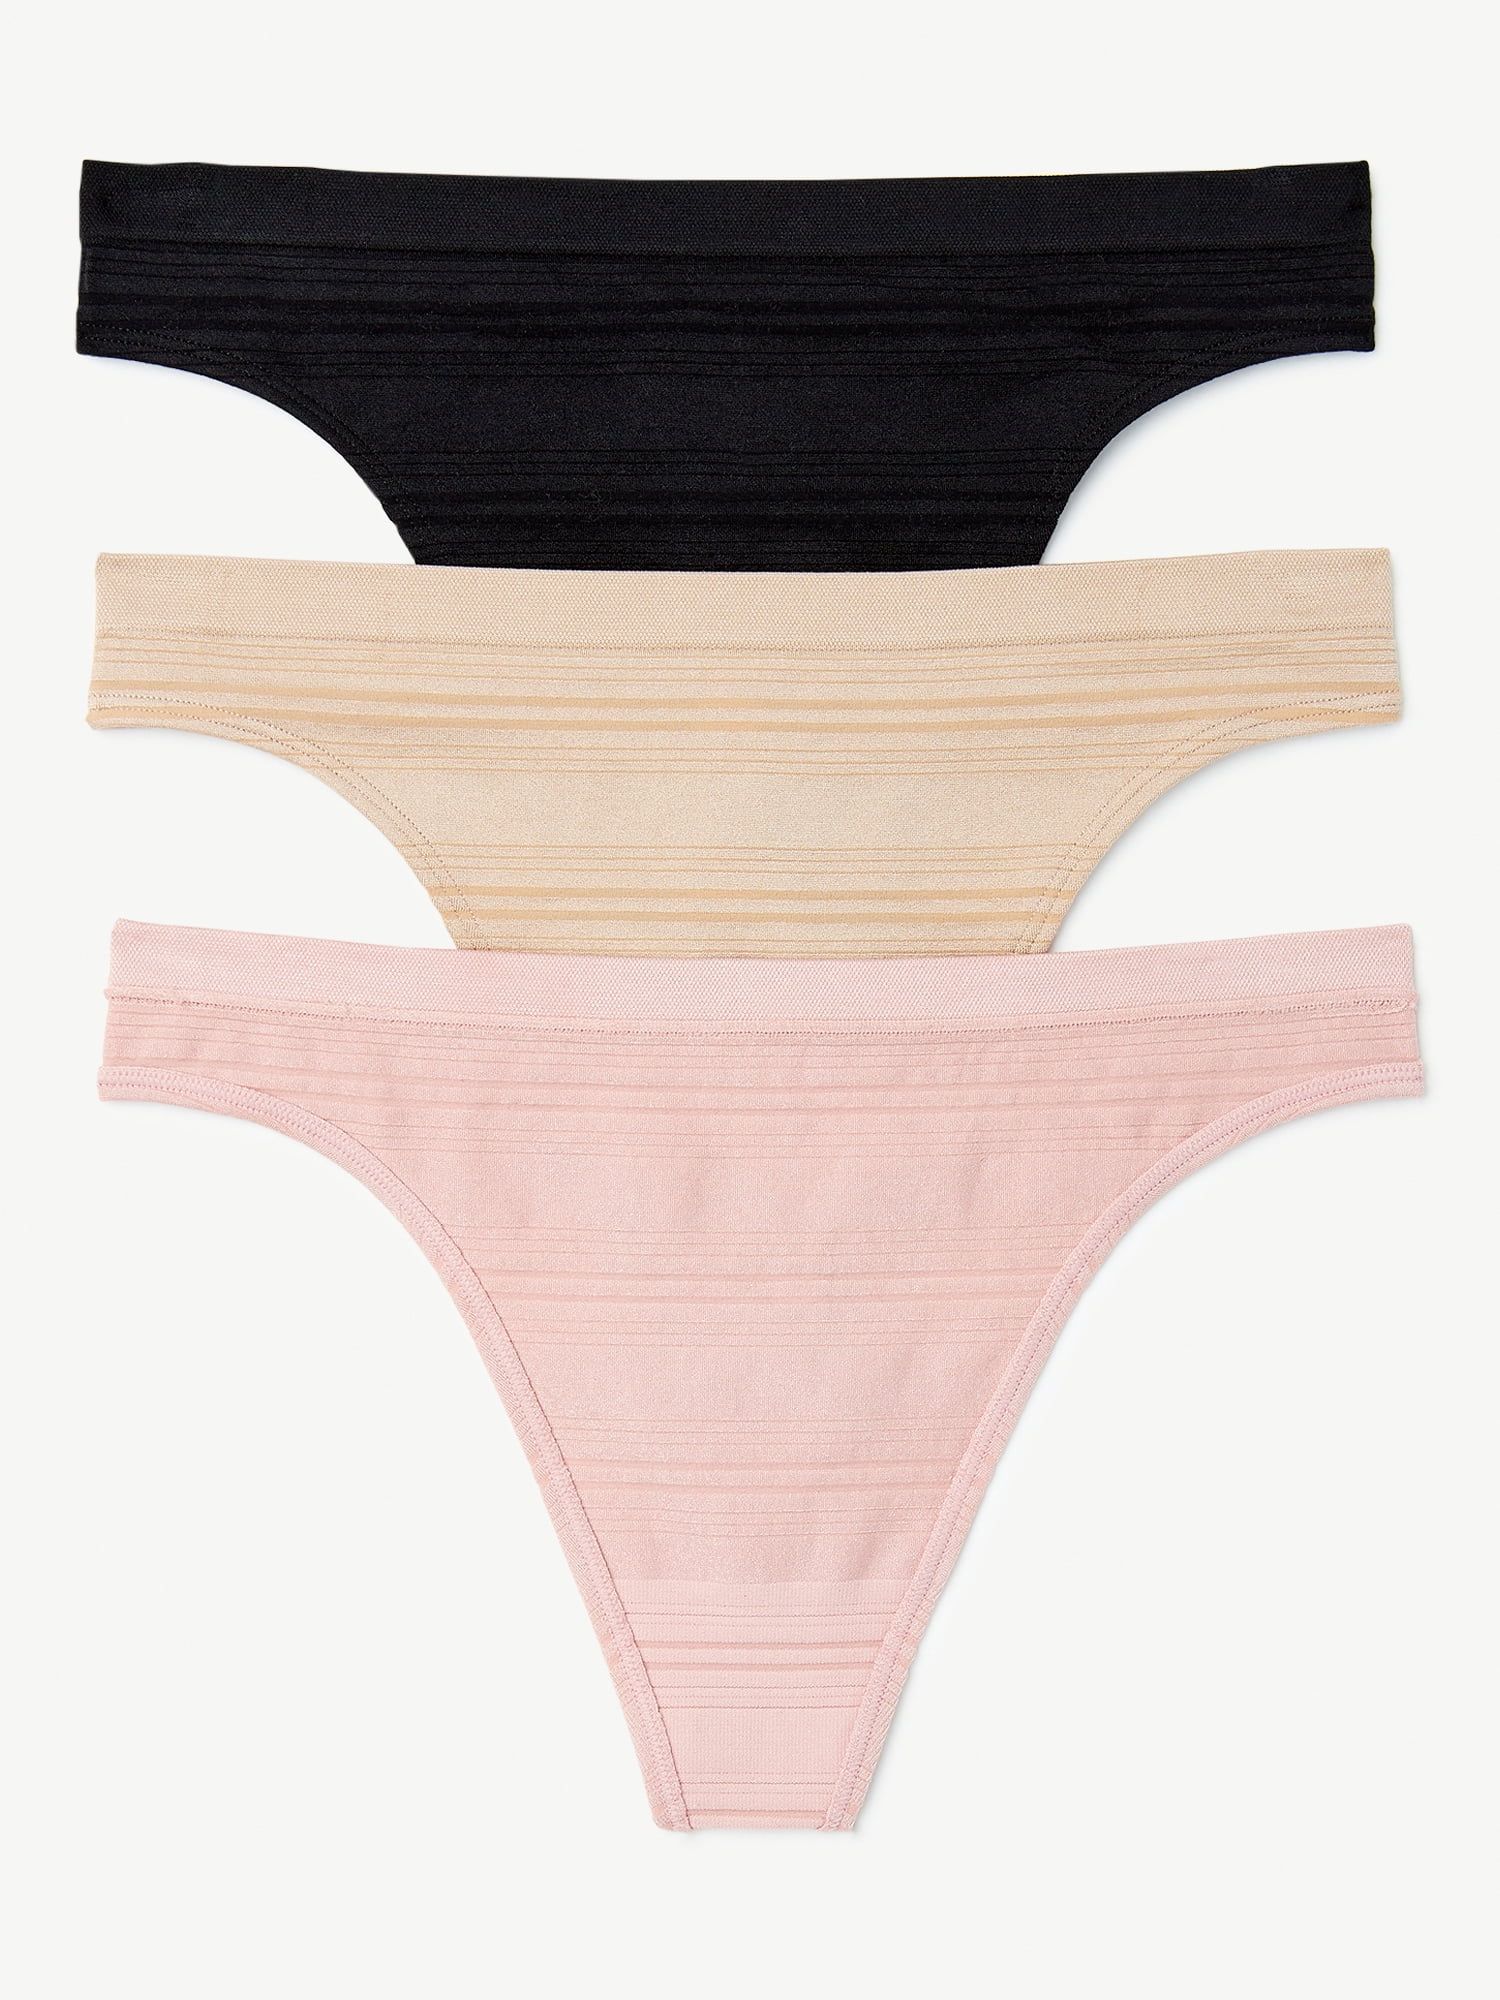 Joyspun Women's Seamless Sheer Stripe Thong Panties, 3-Pack, Sizes S to 3XL | Walmart (US)